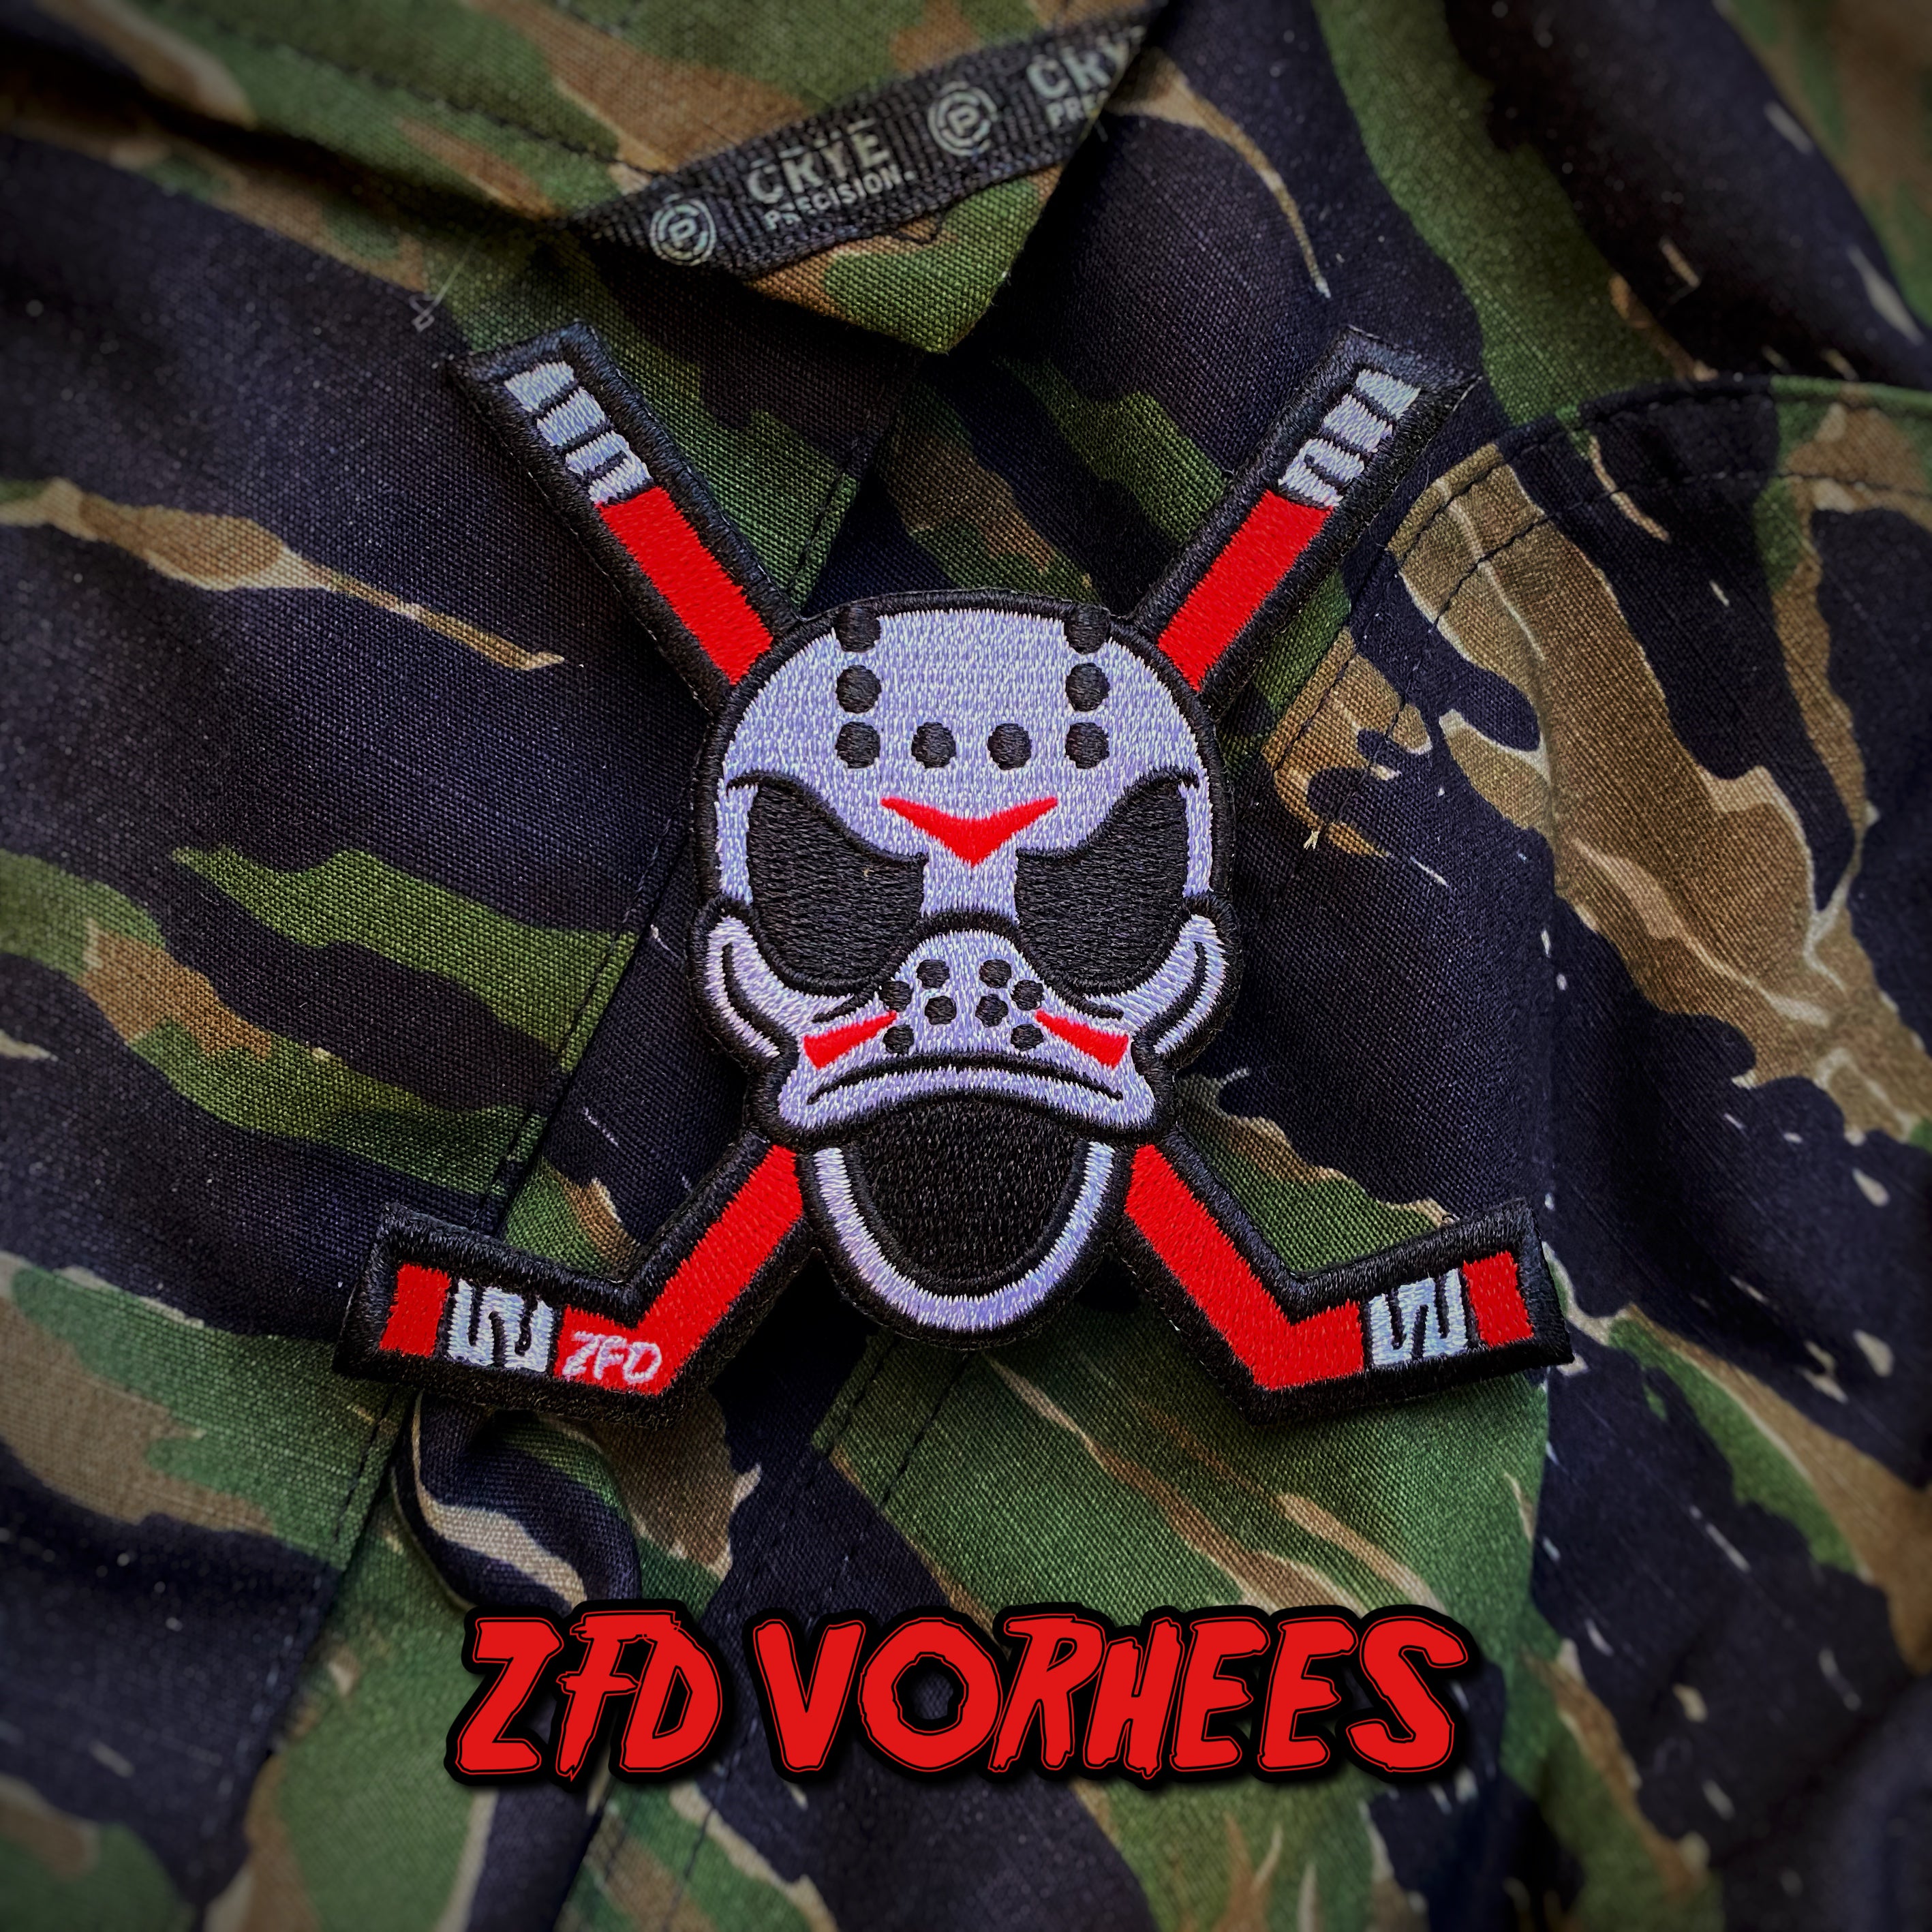 Zero Fucks Duck®️ Order of the Skull and Bones Vorhees Patch